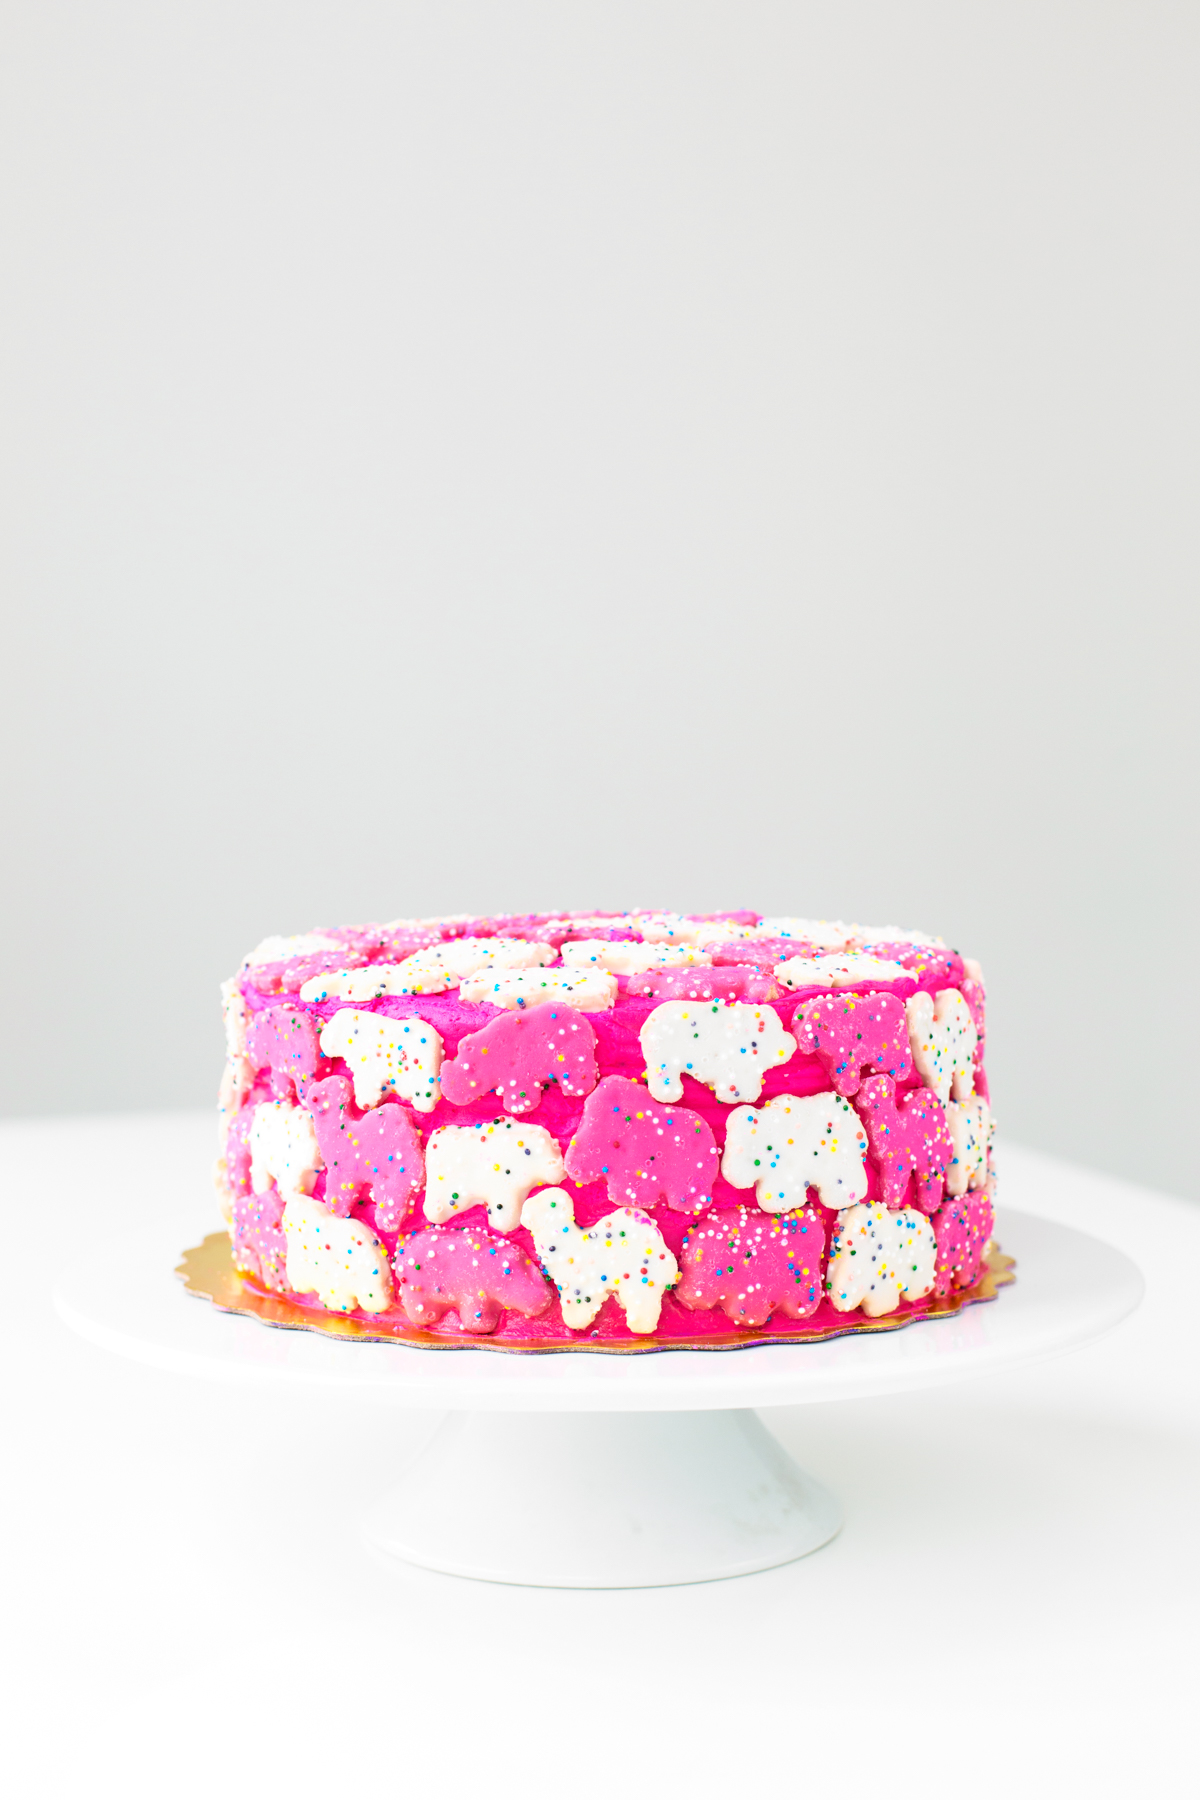 How to Make Boxed Cake Better | Bon Appétit